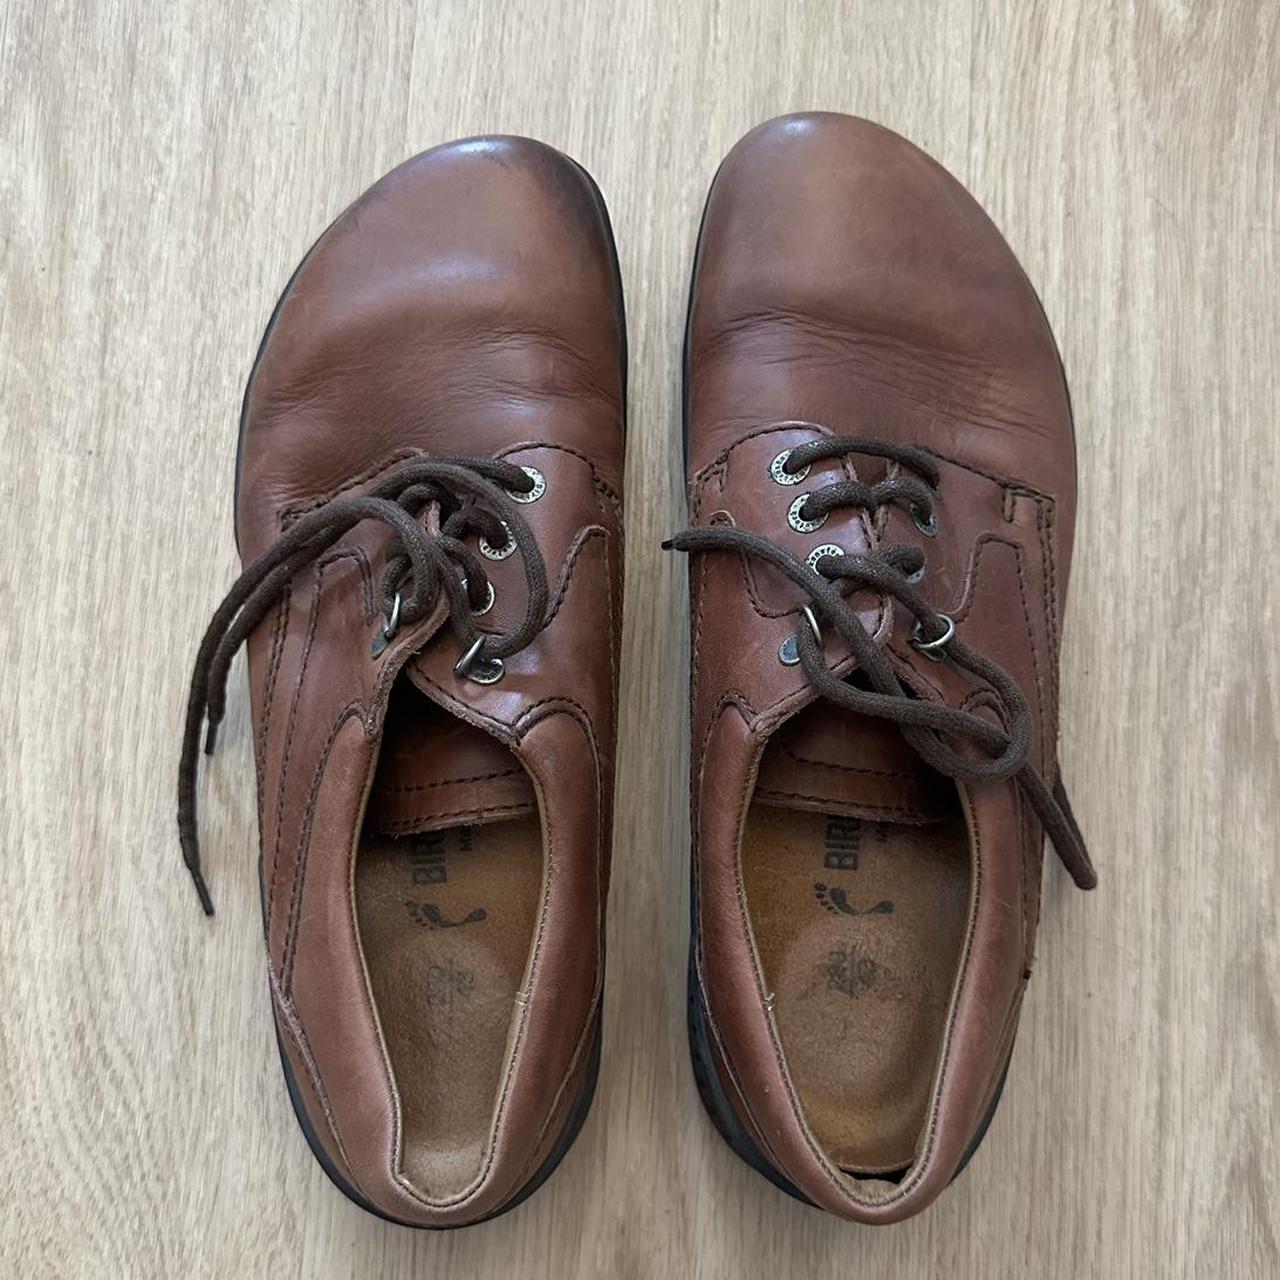 Birkenstock Men’s Leather Oxford Shoes Size 43 (US... - Depop